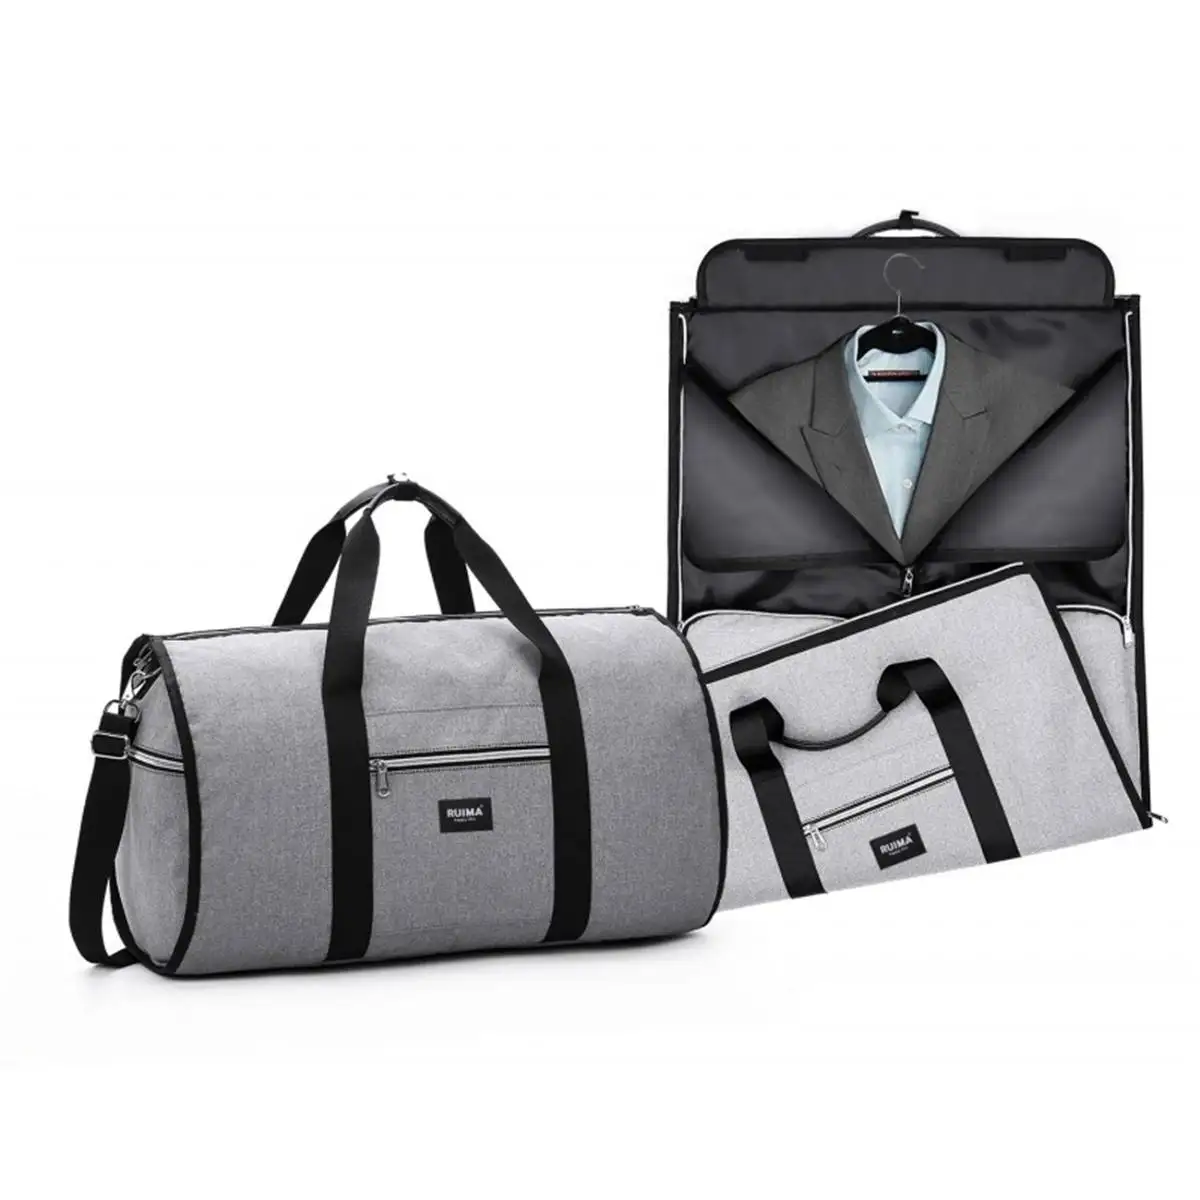 2 в 1, сумка для одежды, мужская, женская, дорожная сумка, водонепроницаемая, дорожная сумка на плечо, большая, для багажа, вещевой мешок, сумки для переноски, для отдыха, ручная сумка